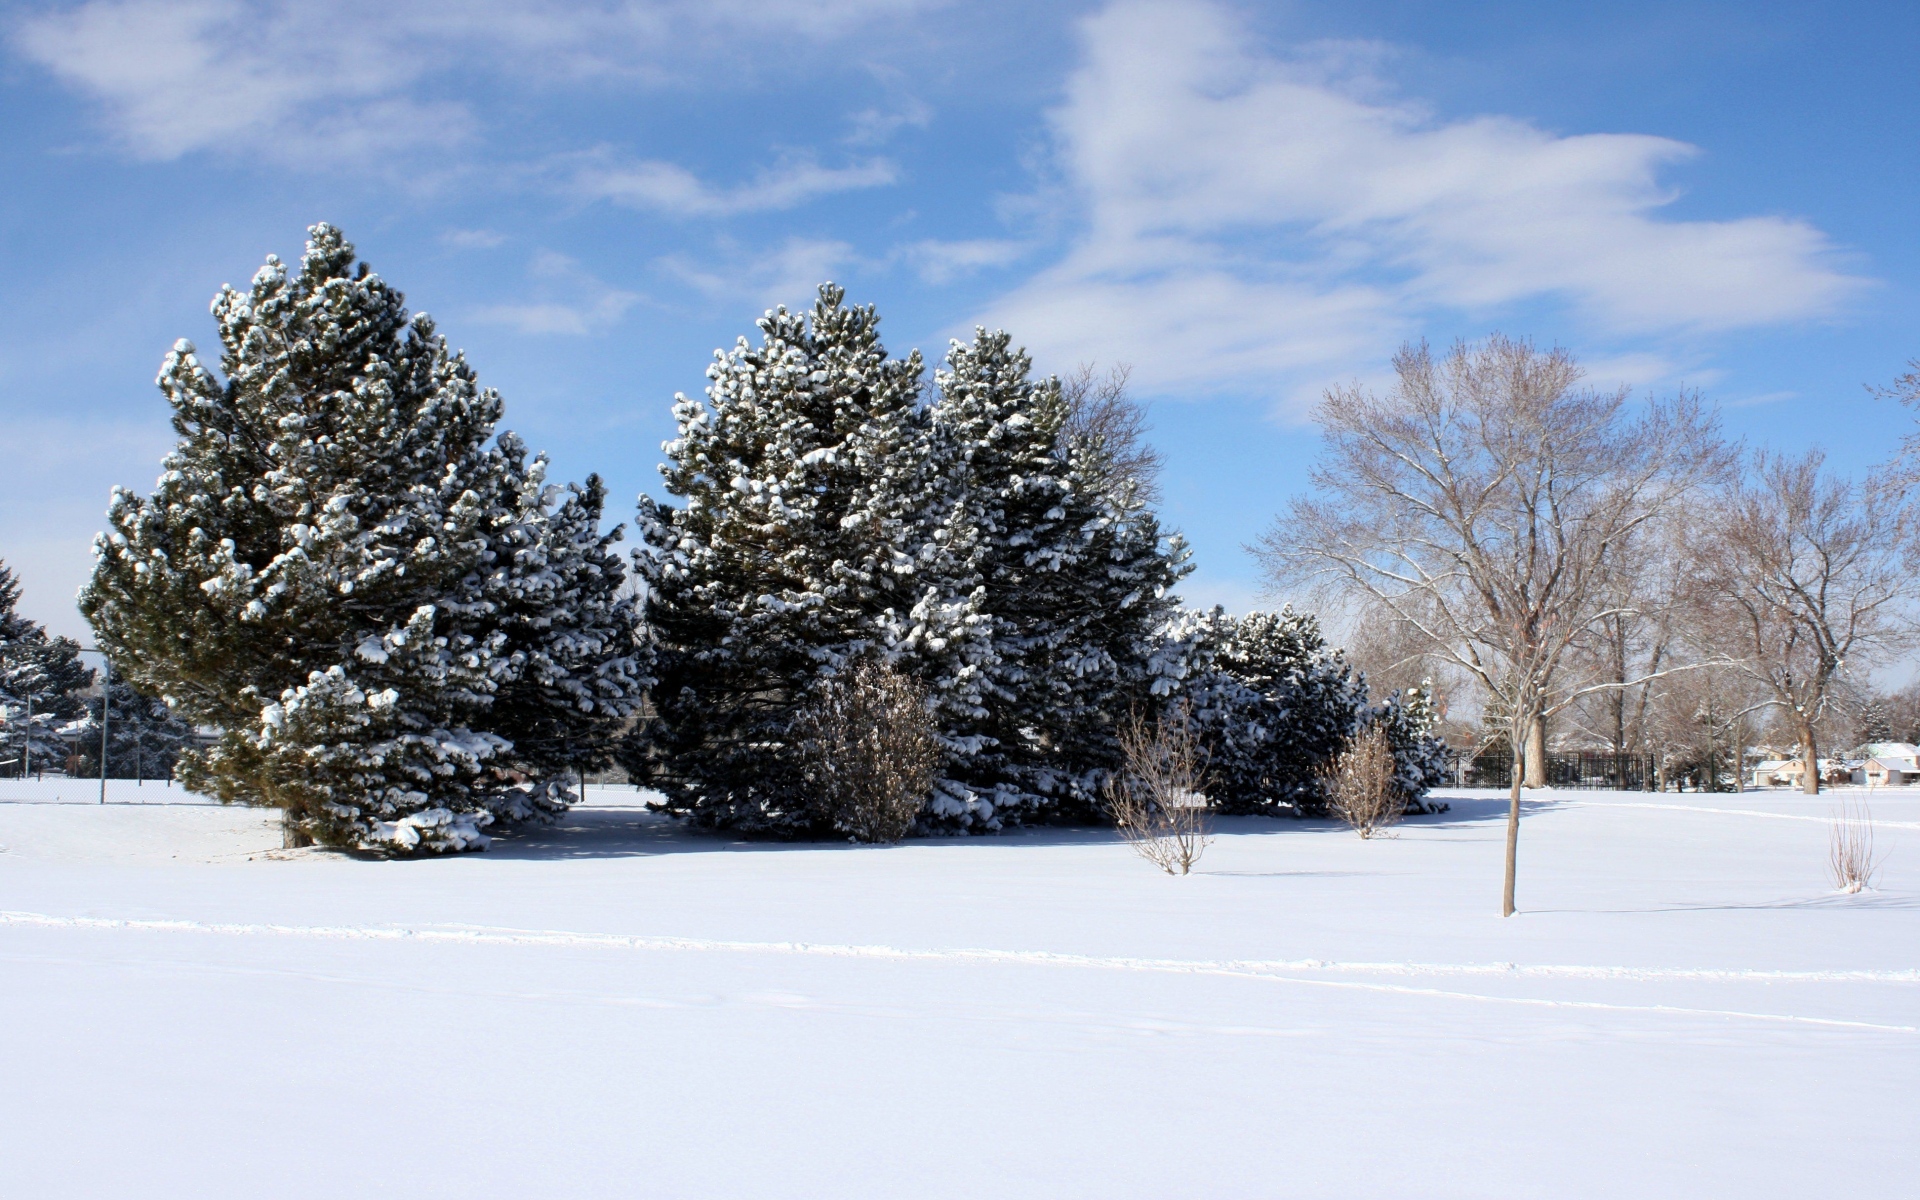 Картинки поляна, снег, зима, деревья, небо, синий, сосны, развалившись, ветви, ковровое покрытие, ясно фото и обои на рабочий стол